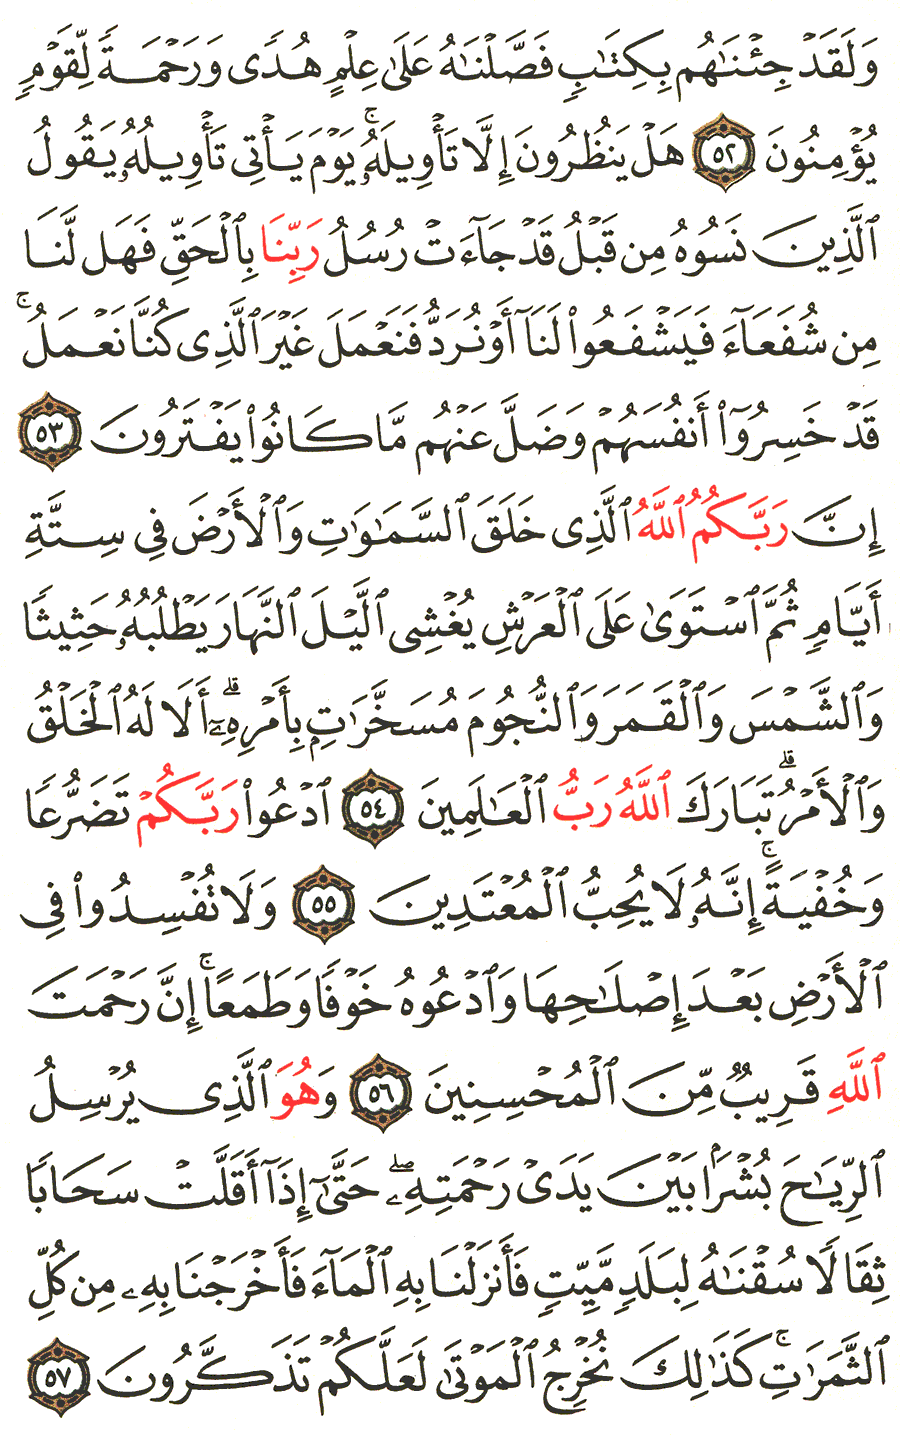 الصفحة 157 من القرآن الكريم